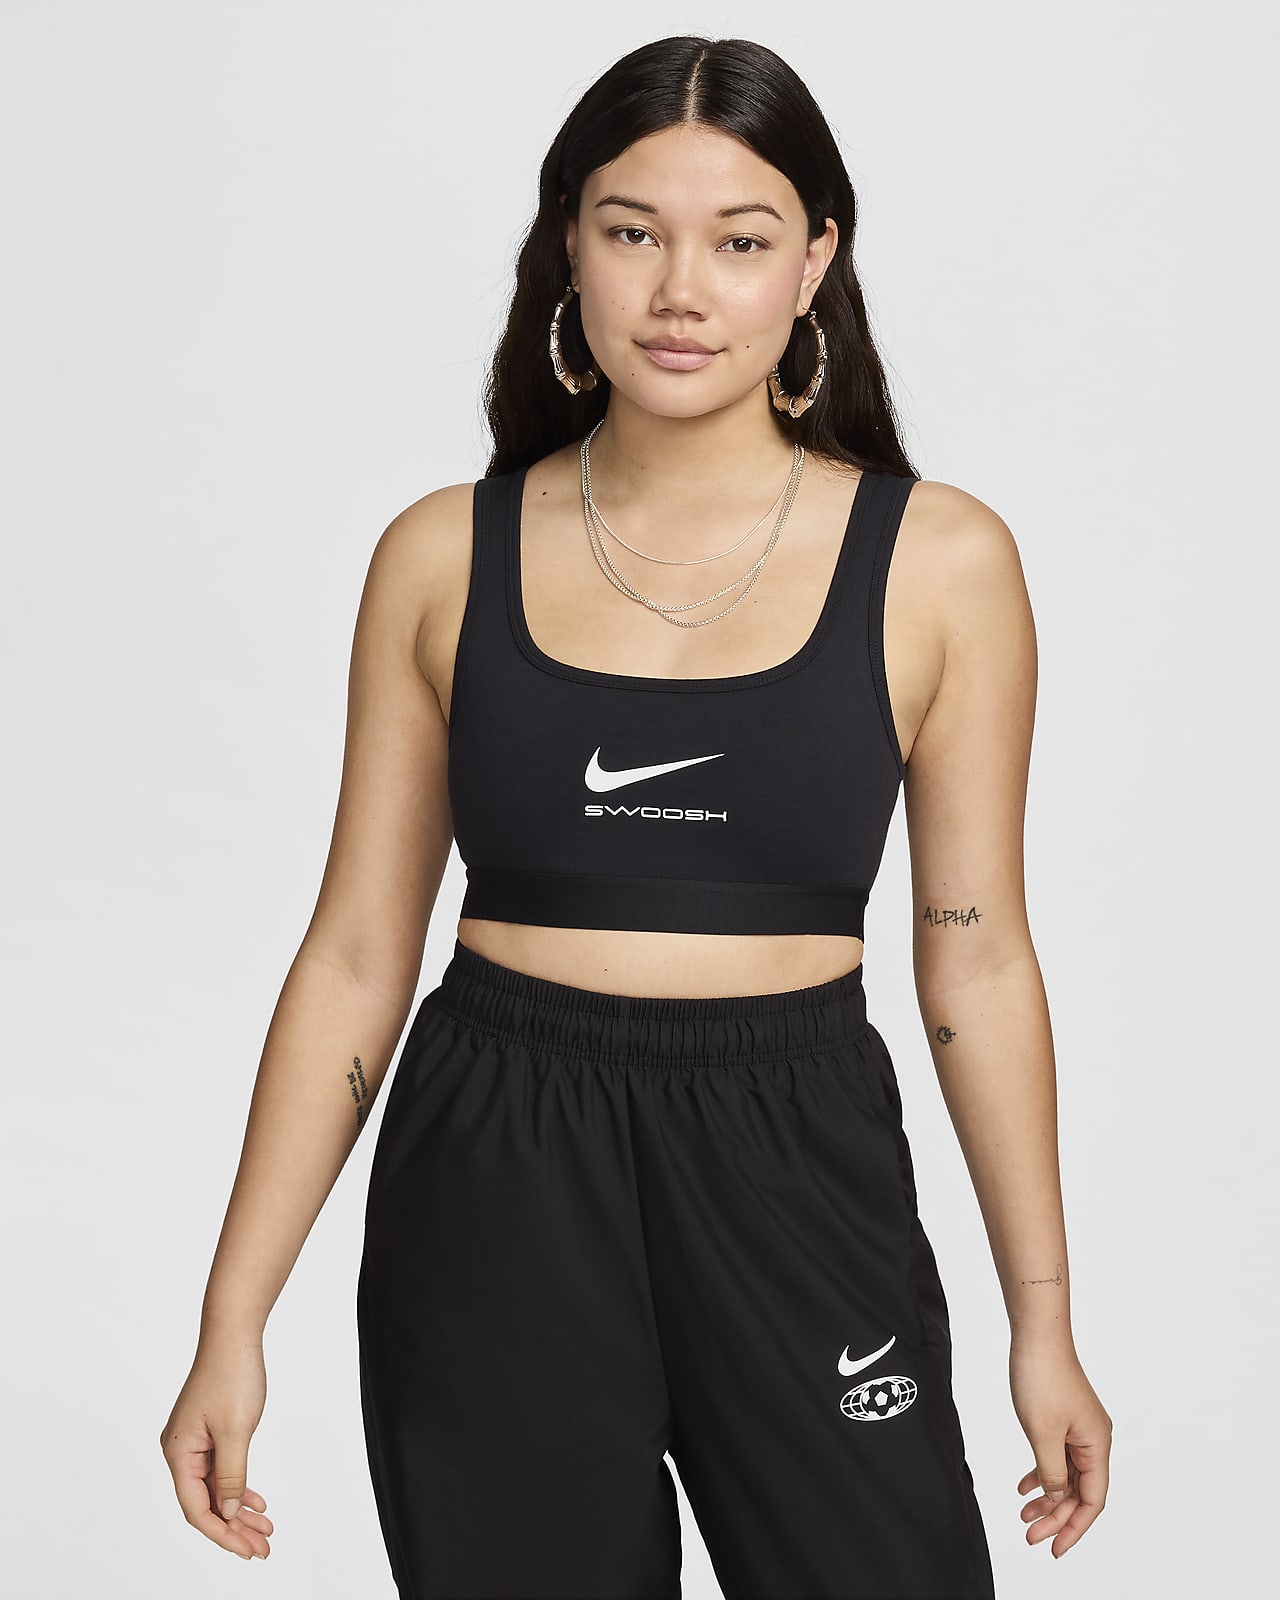 Canotta ridotta Nike Sportswear - Donna